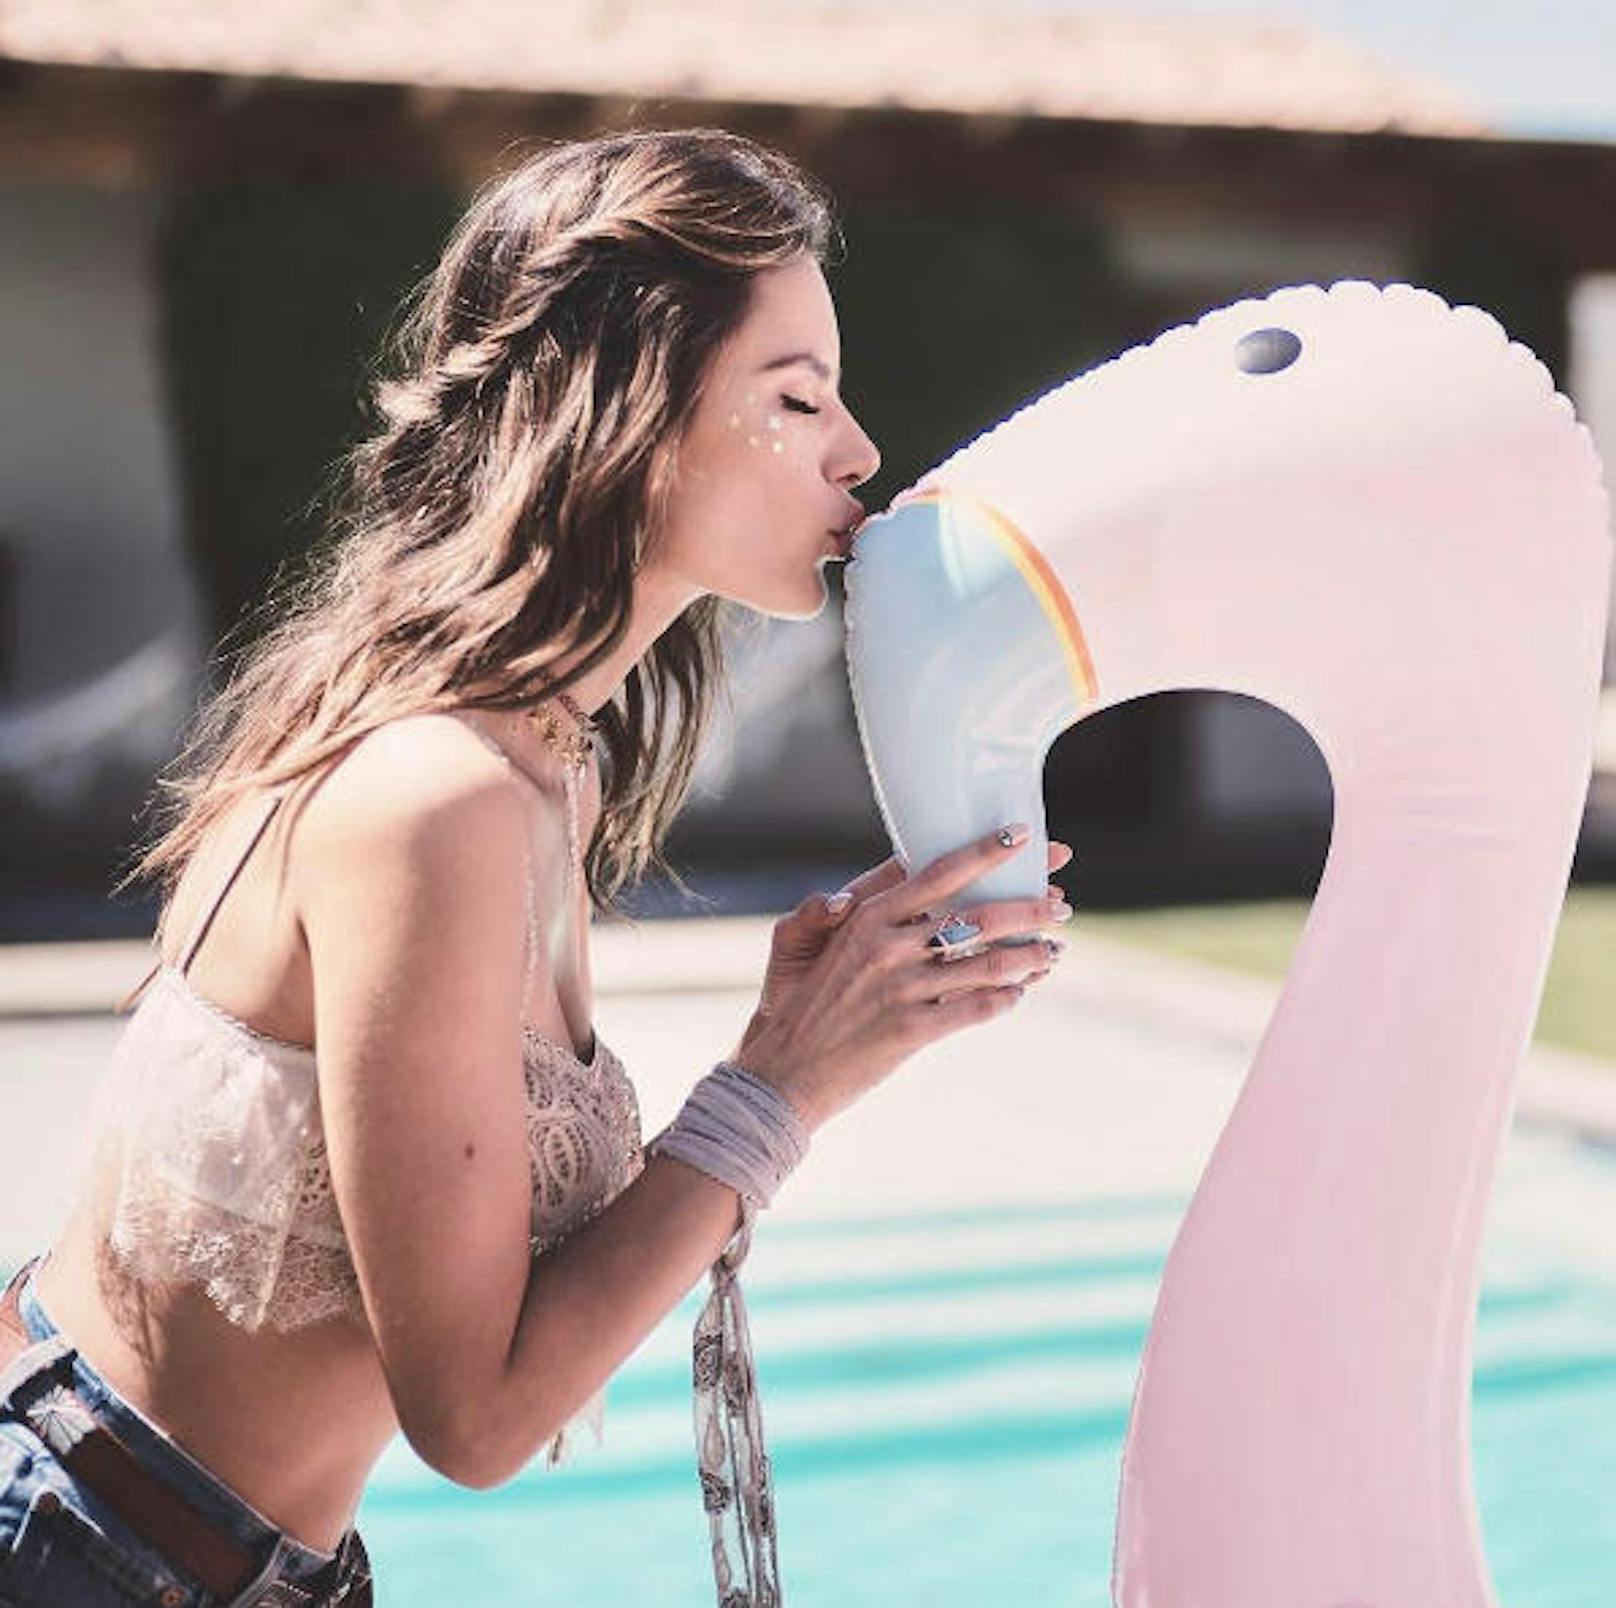 21.04.2017: Wenn ein Engerl einen Schwan küsst...
"Victoria's Secret"-Model Alessandra Ambrosio postete diesen Schnappschuss und schreibt dazu "Angel's best friends".